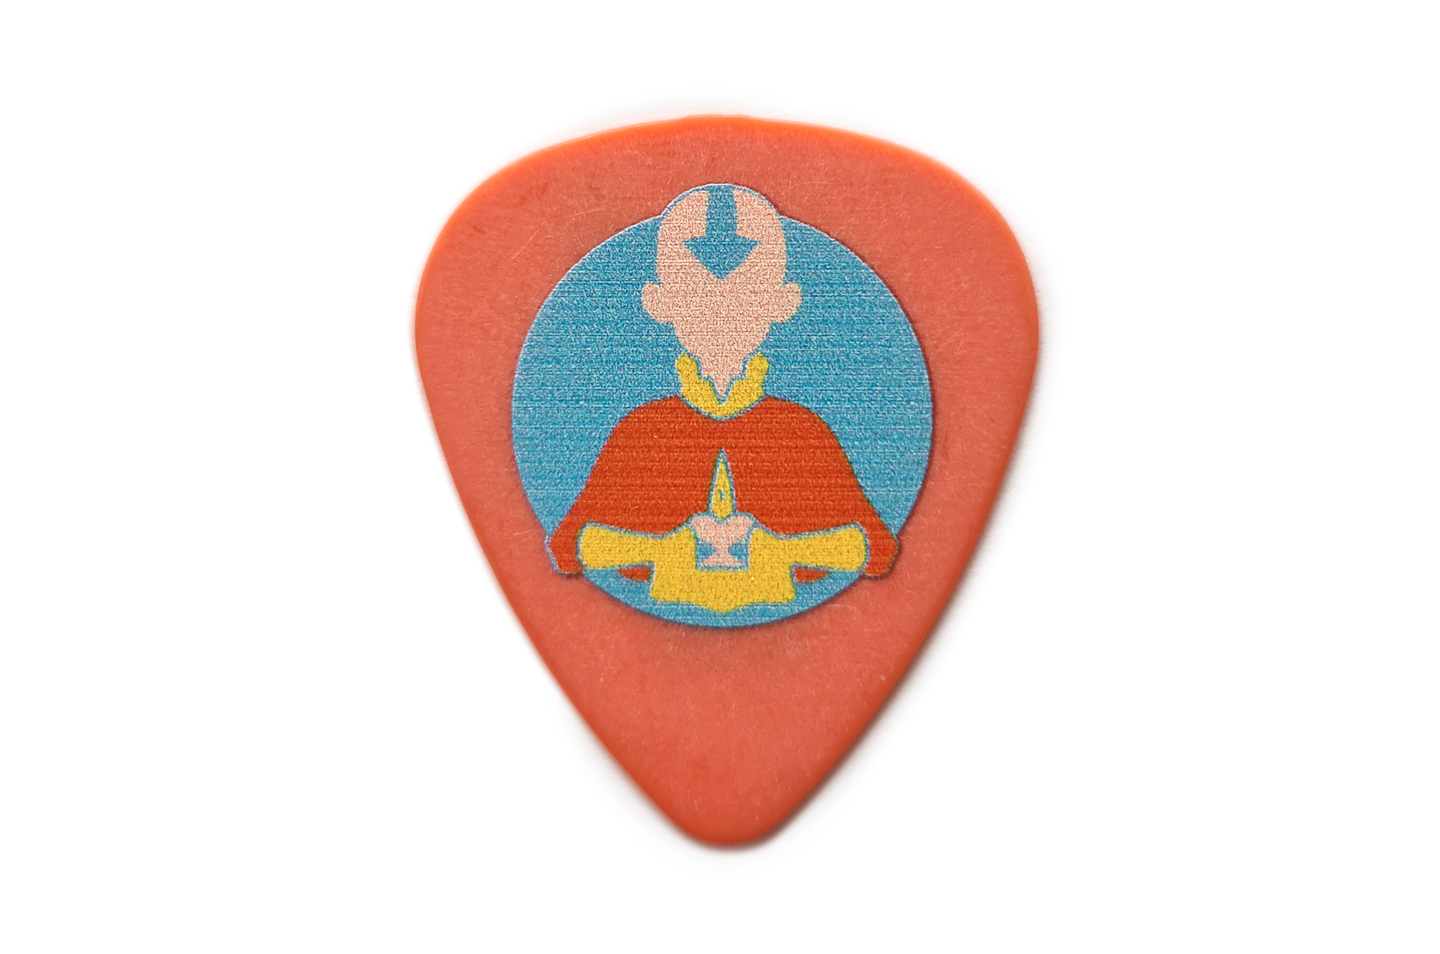 Avatar Aang Guitar Pick